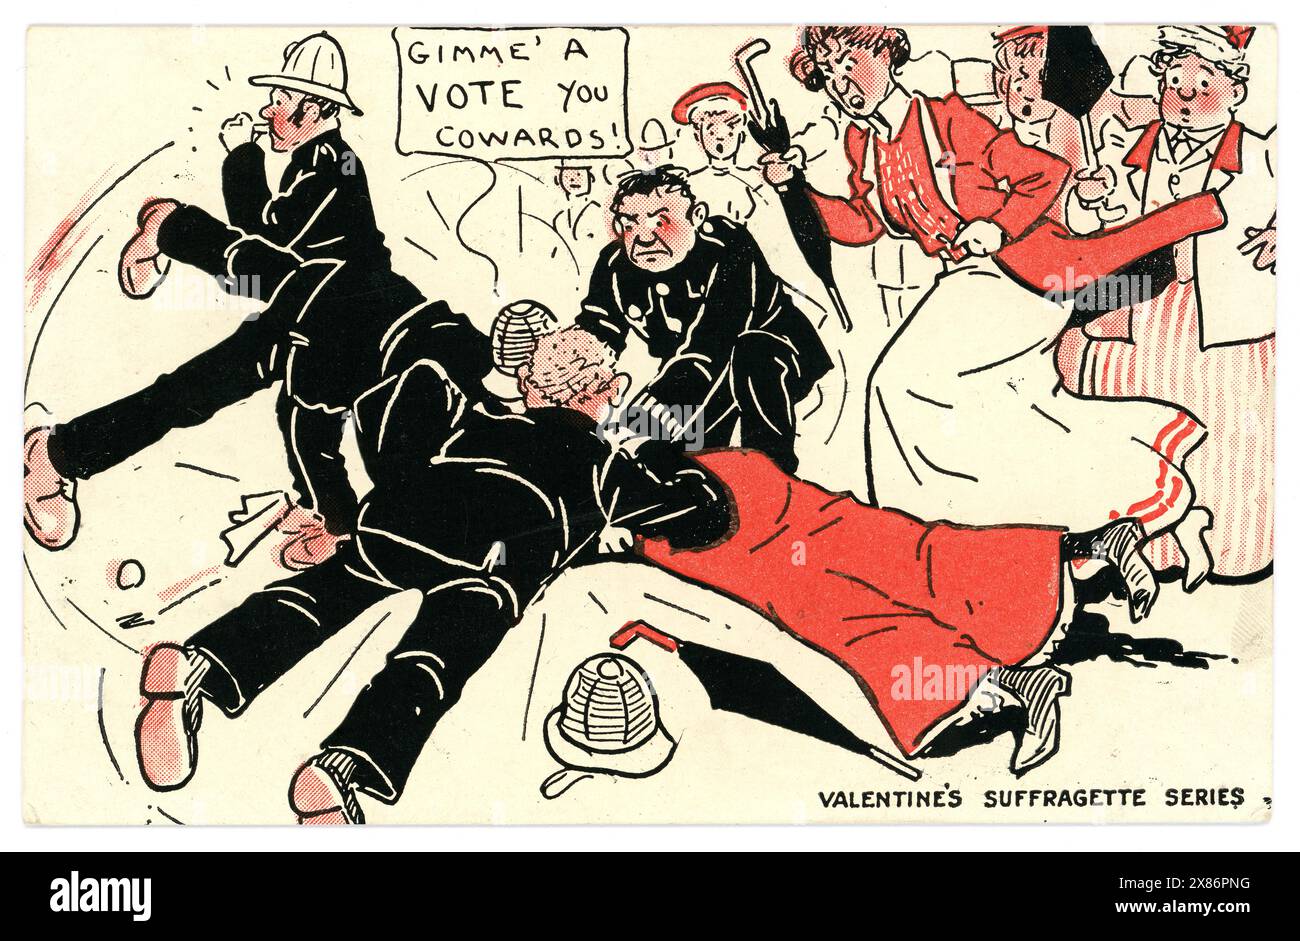 Original-Anti-Suffragette-Postkarte, das Banner lautet „Gime a vote you Feiglinge“. Ein wütender Mob von Frauen greift einen Polizisten an, der für sein Wahlrecht kämpft. Die Stimmen für Frauen waren in den frühen 1900er Jahren ein umstrittenes Thema Das ist eine typische Postkarte der Zeit, die Suffragetten als hässliche, unattraktive, wütende Frauen darstellt. Postkarte illustriert von D Geo aus der Valentines Suffragette Serie. Stockfoto